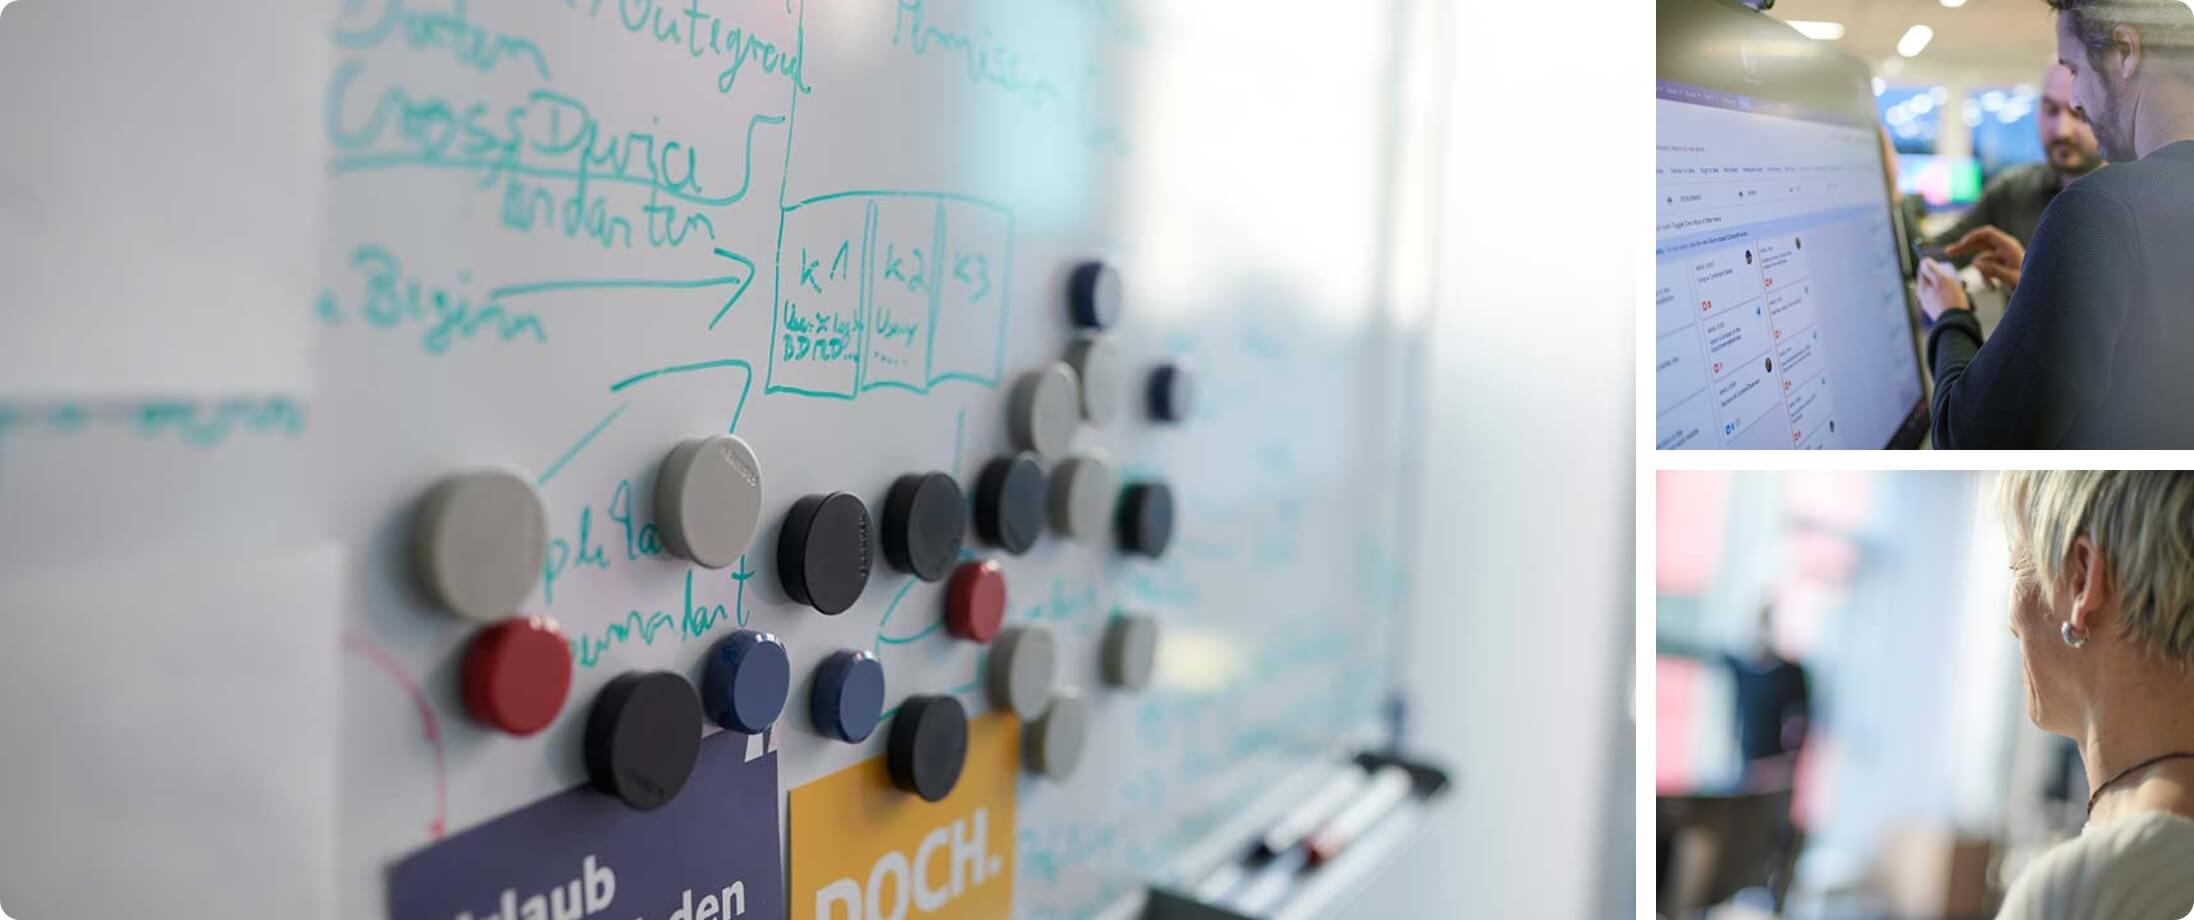 Collage aus Whiteboard mit Magneten, Touchscreen und Sticky Notes